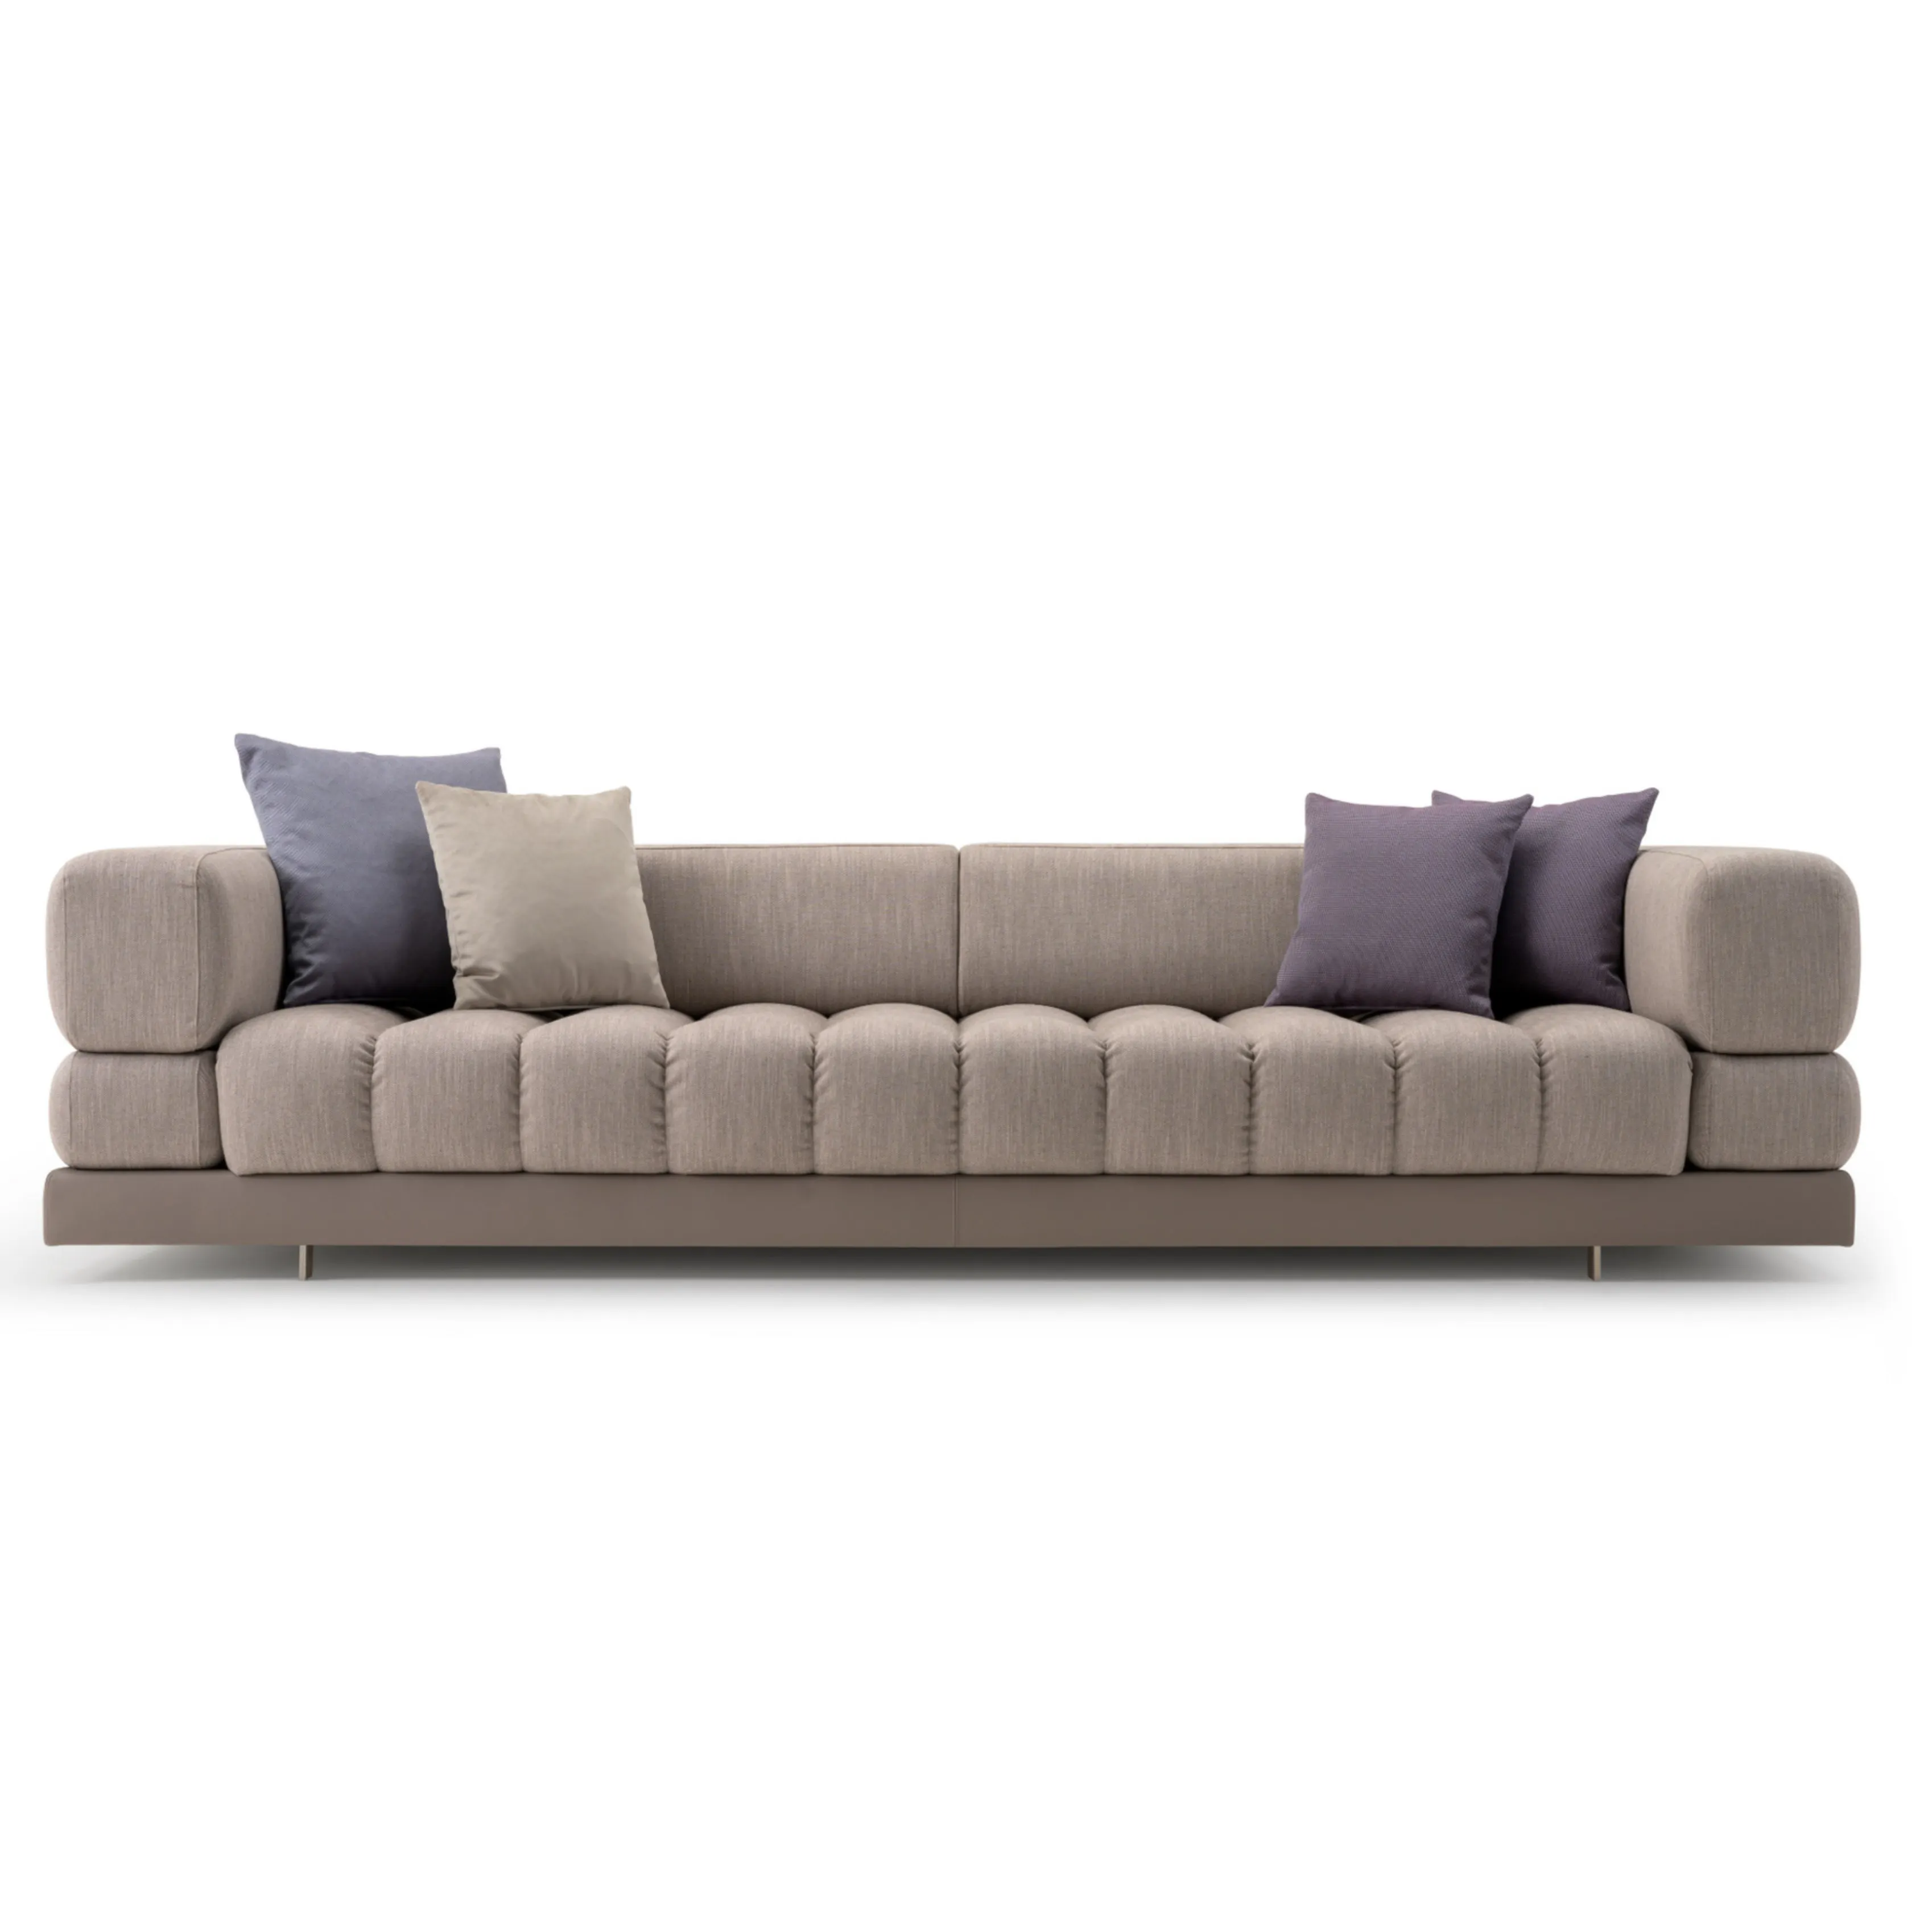 Canapé en tissu de salon de style nordique design moderne canapé en tissu sectionnel de style européen canapé causeuse taille canapé en tissu modulaire